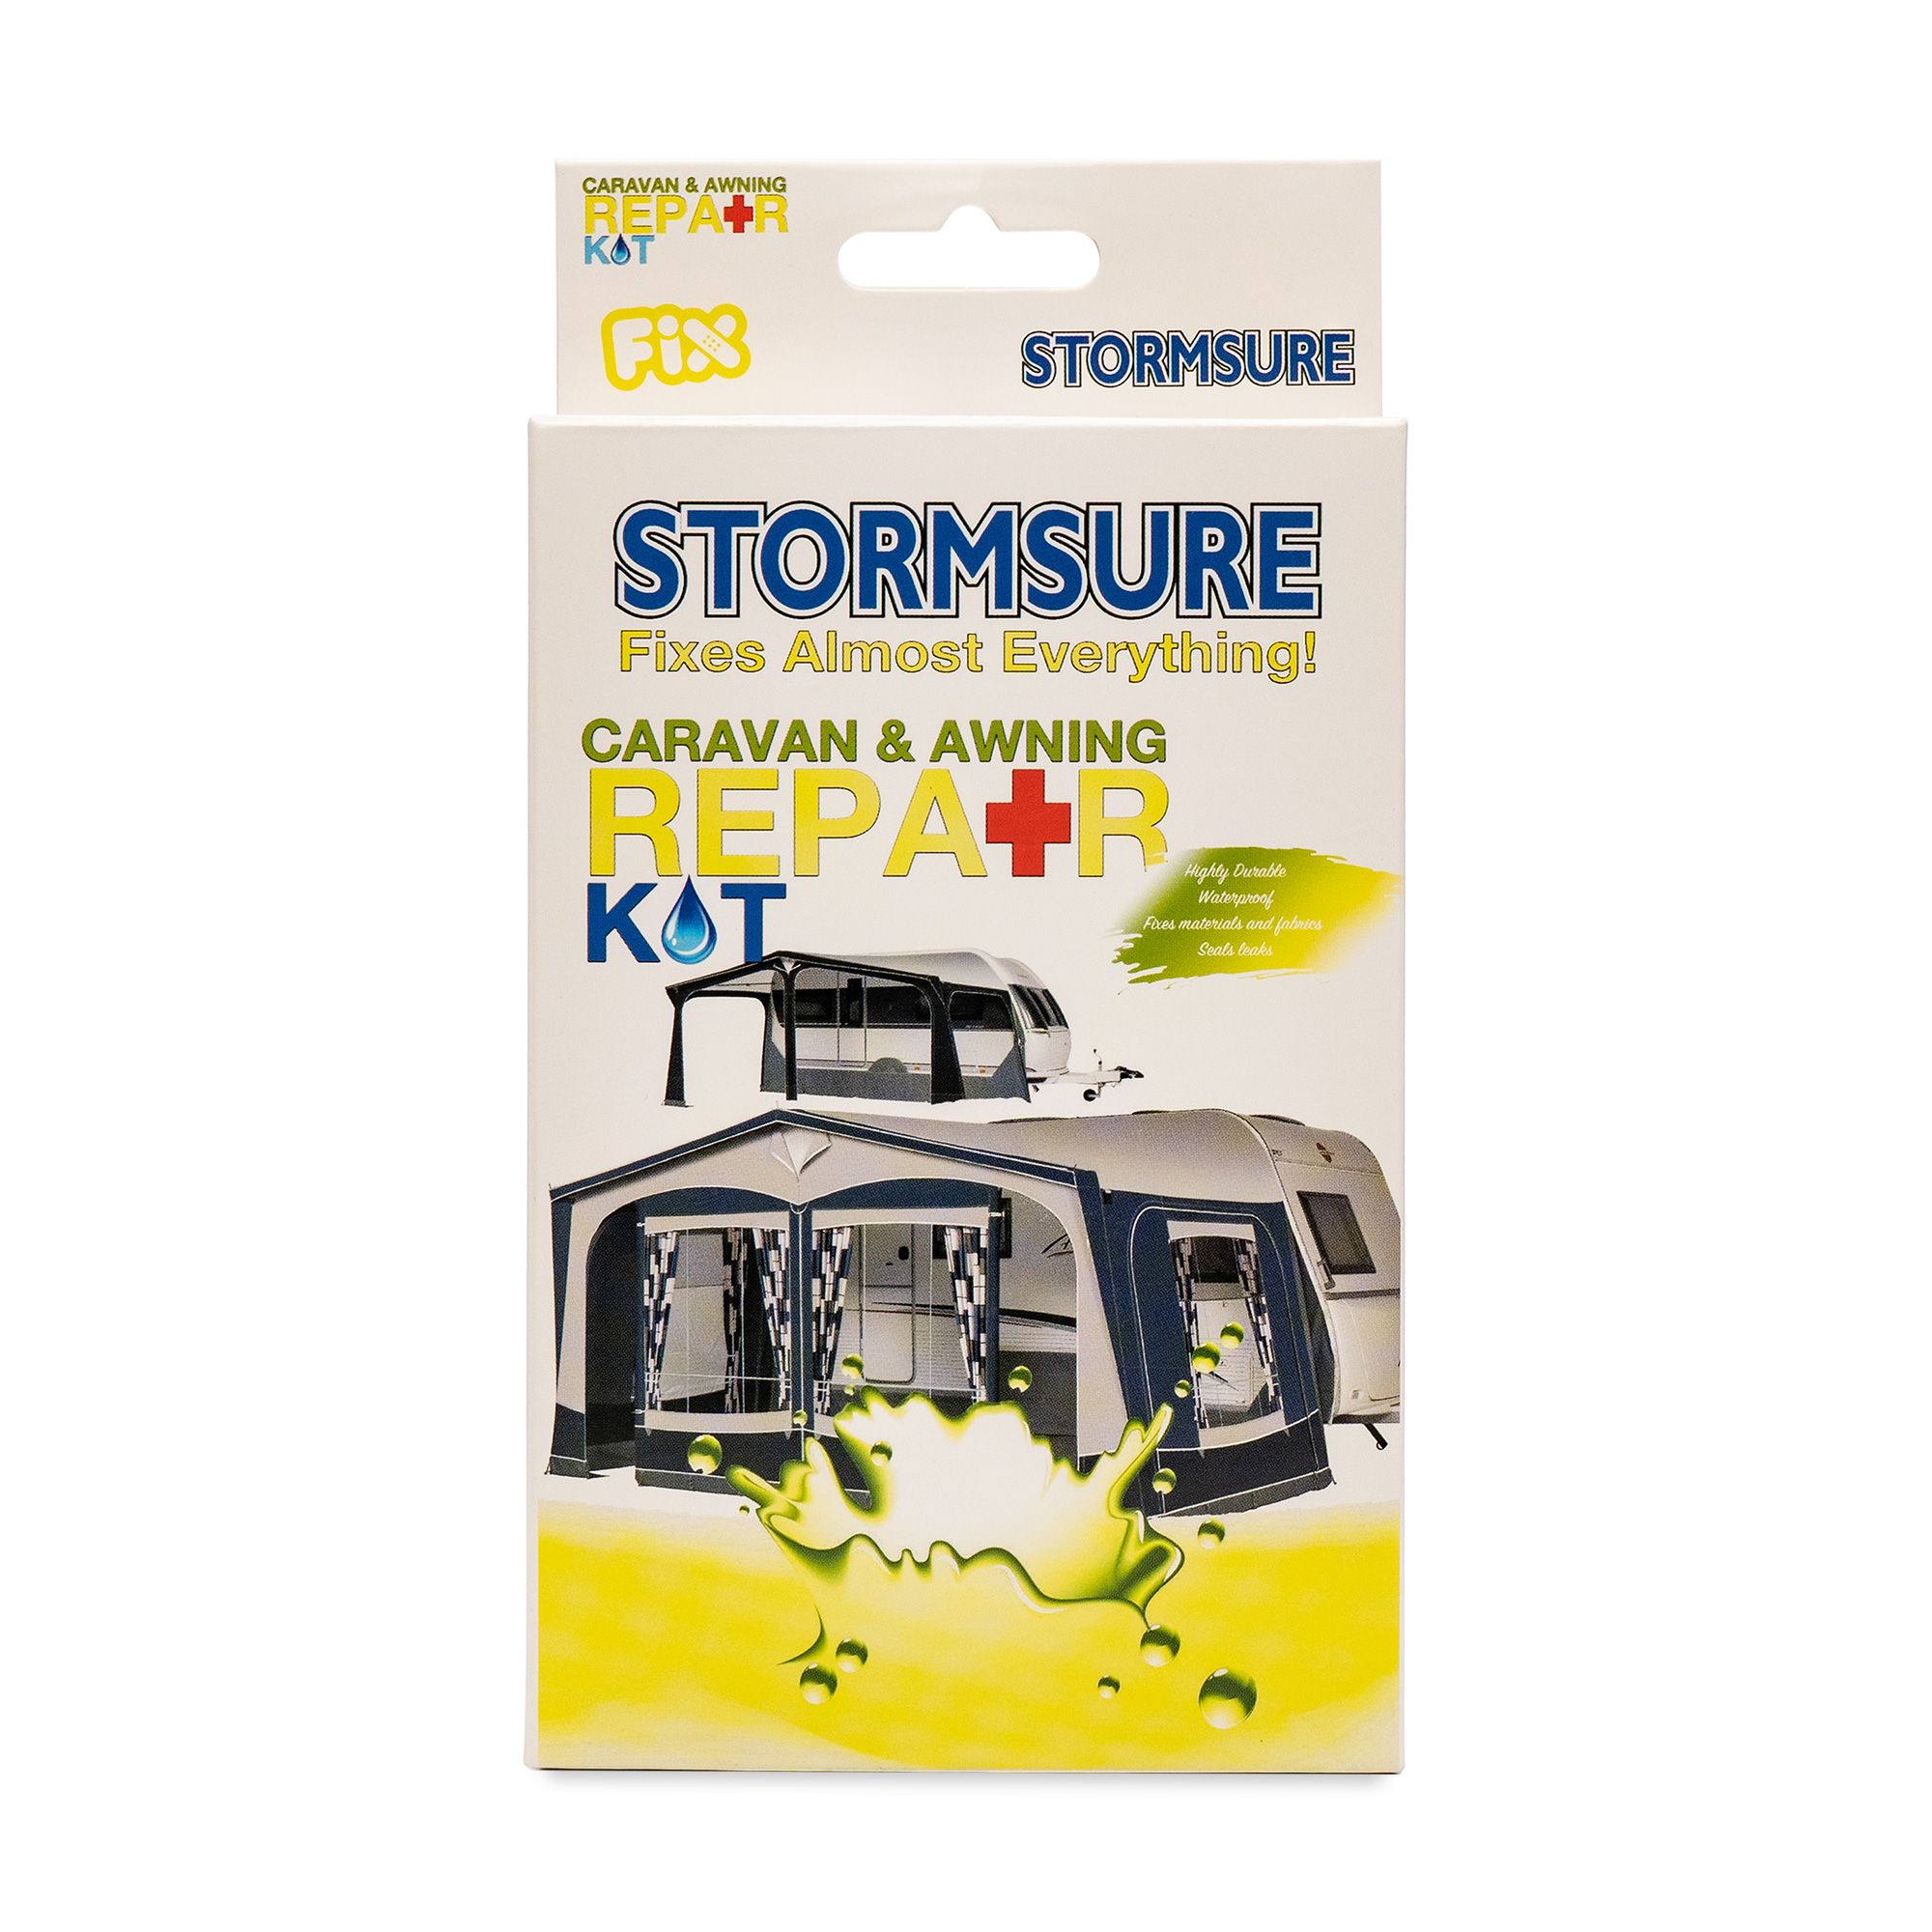 Stormsure Caravan & Awning Repair Kit